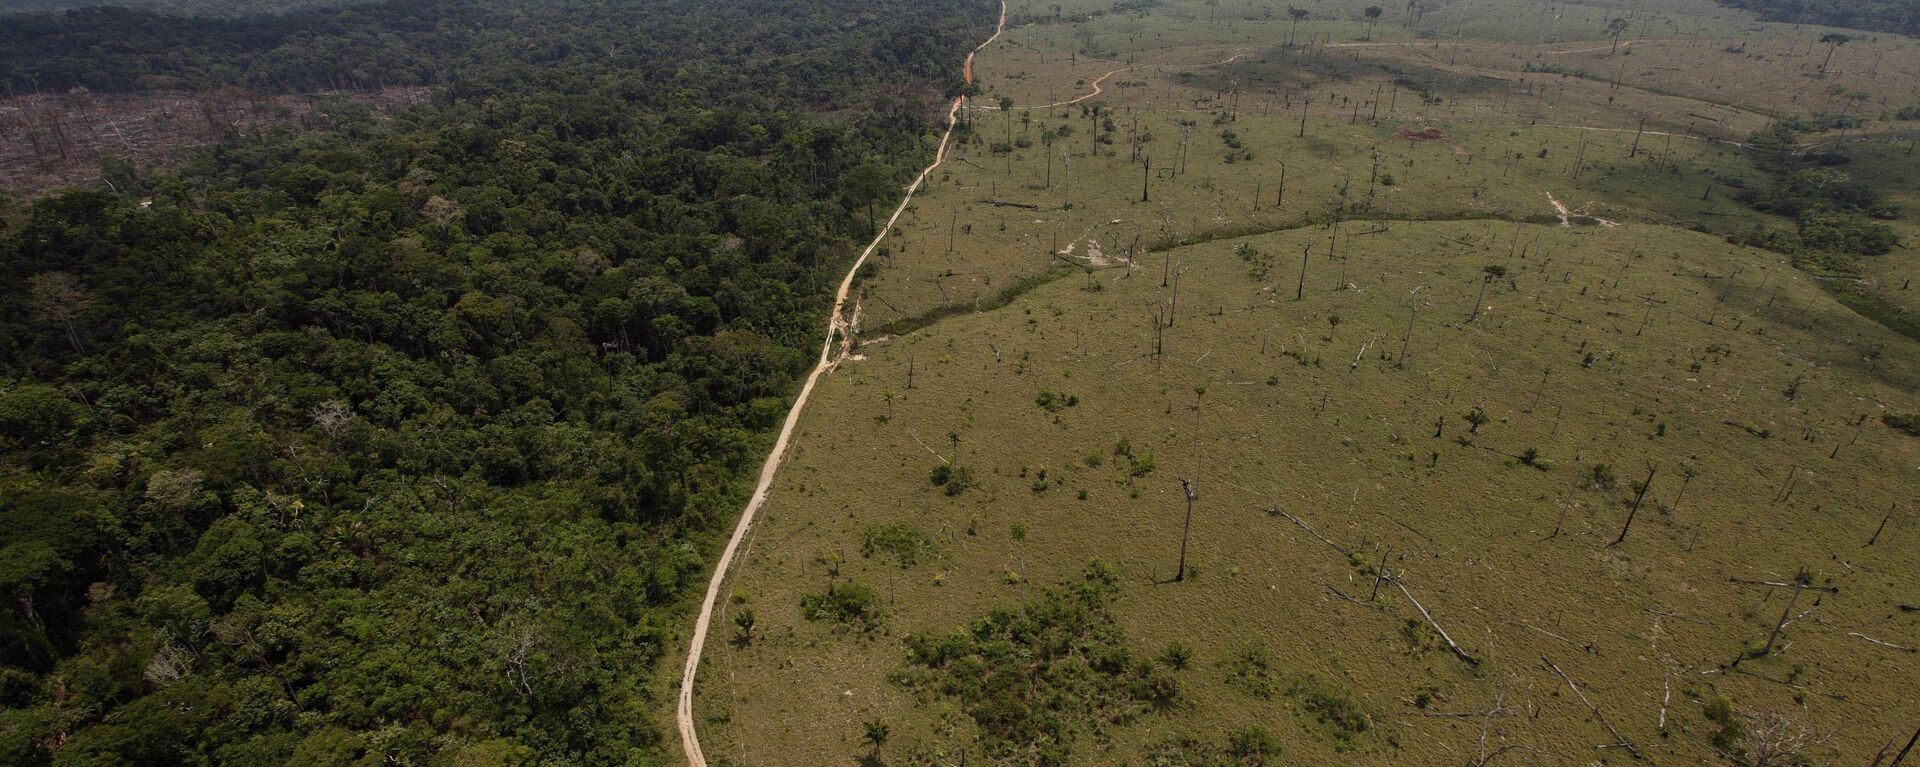 Una área deforestada en la Amazonía brasileña - Sputnik Mundo, 1920, 16.09.2020